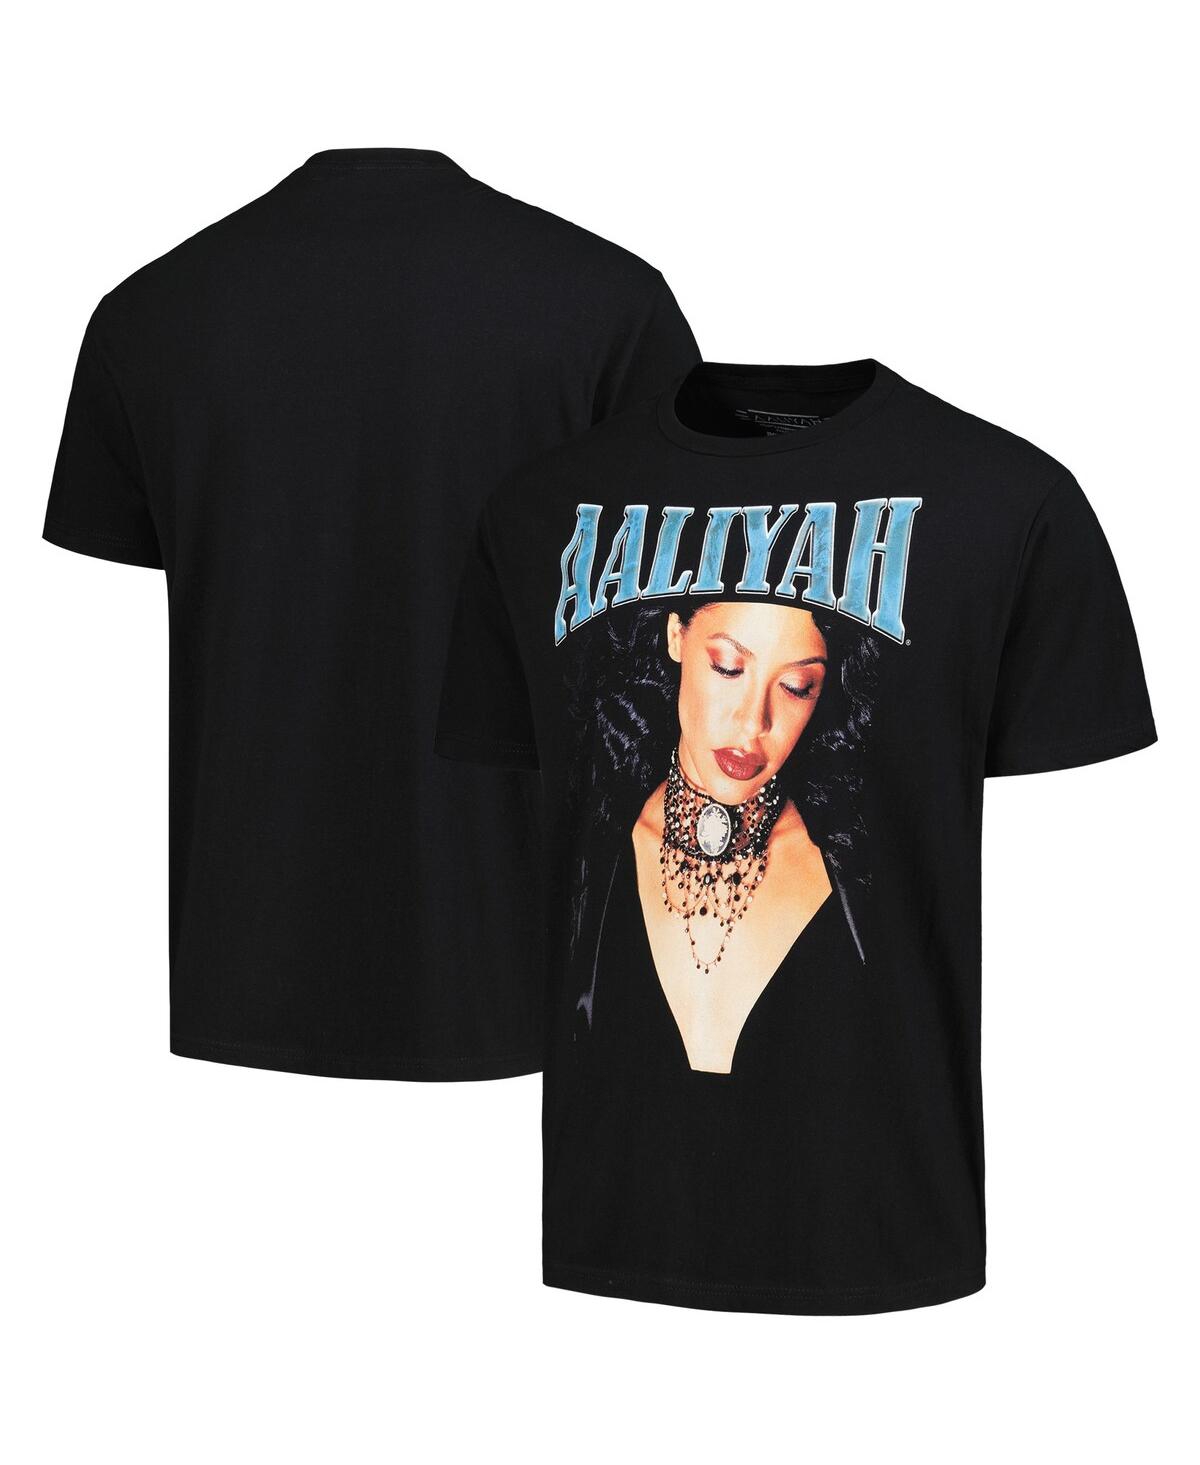 Men's Black Aaliyah Graphic T-shirt - Black